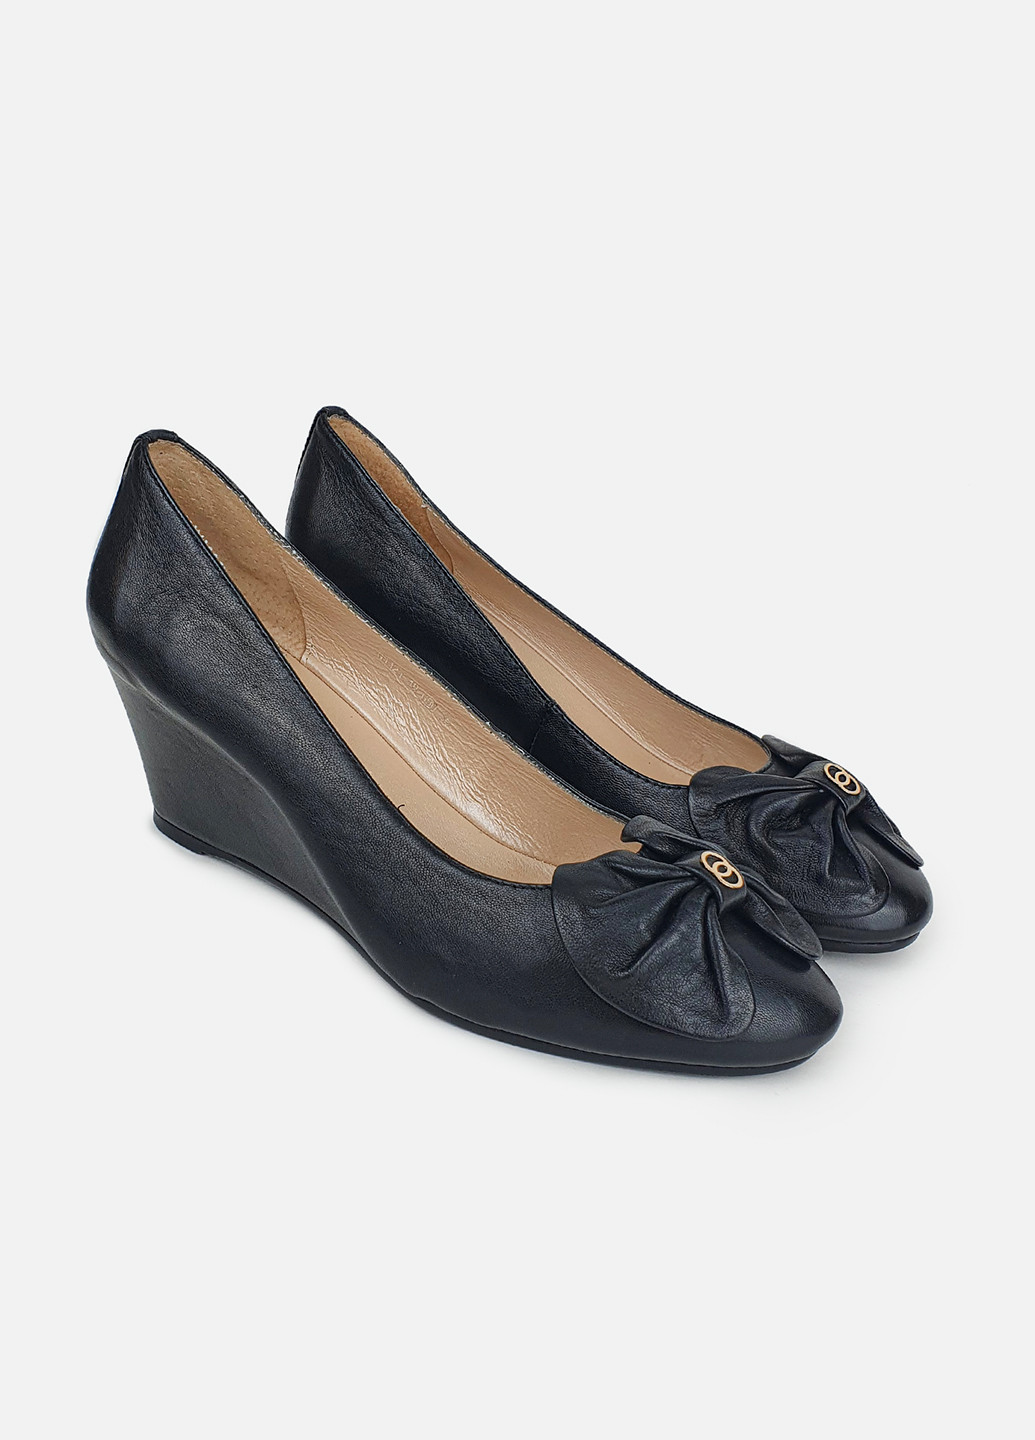 Женские туфли на танкетке кожаные черные Glossi